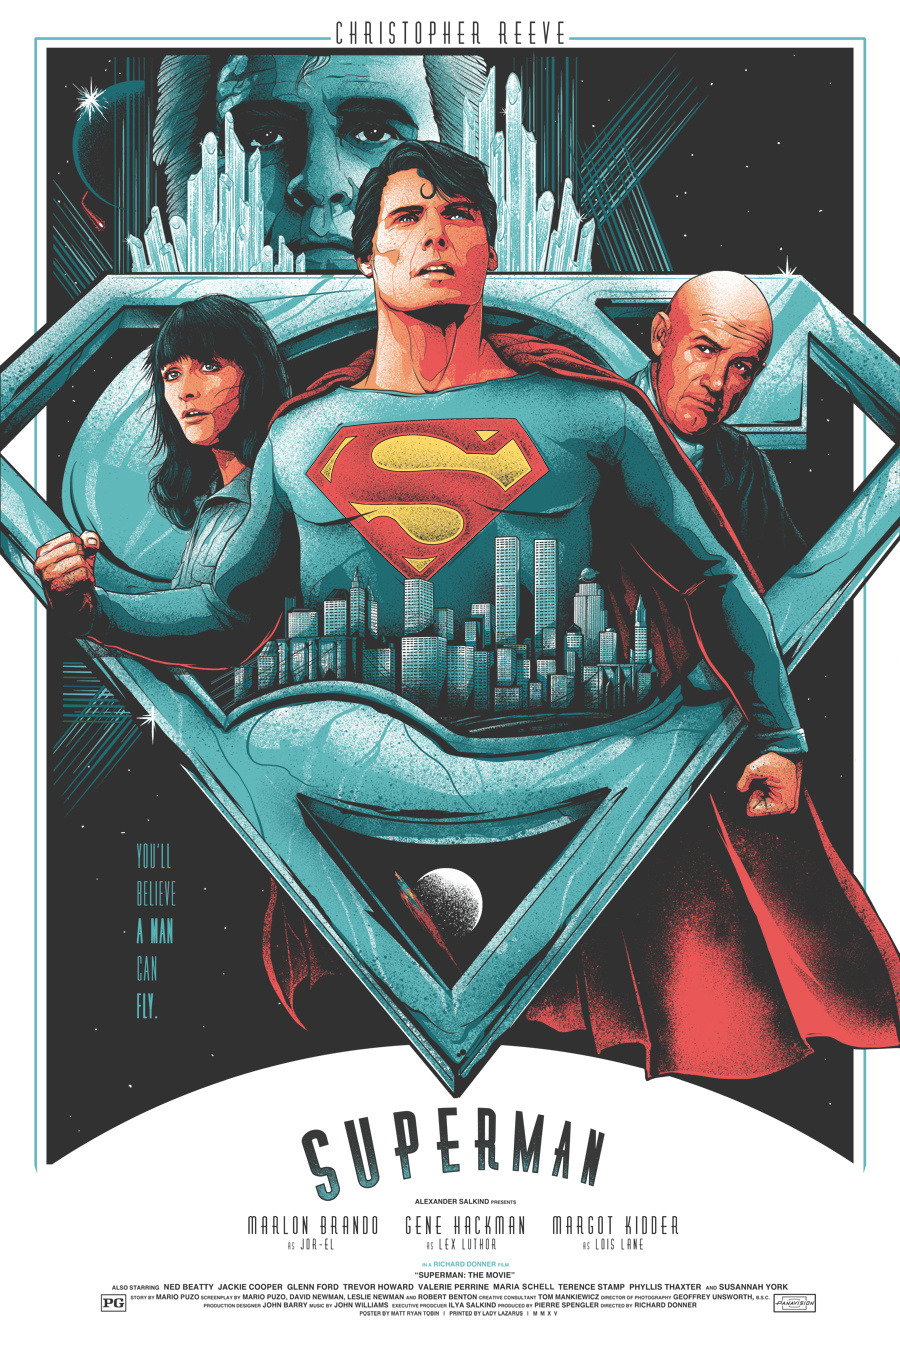 Superman fan art poster